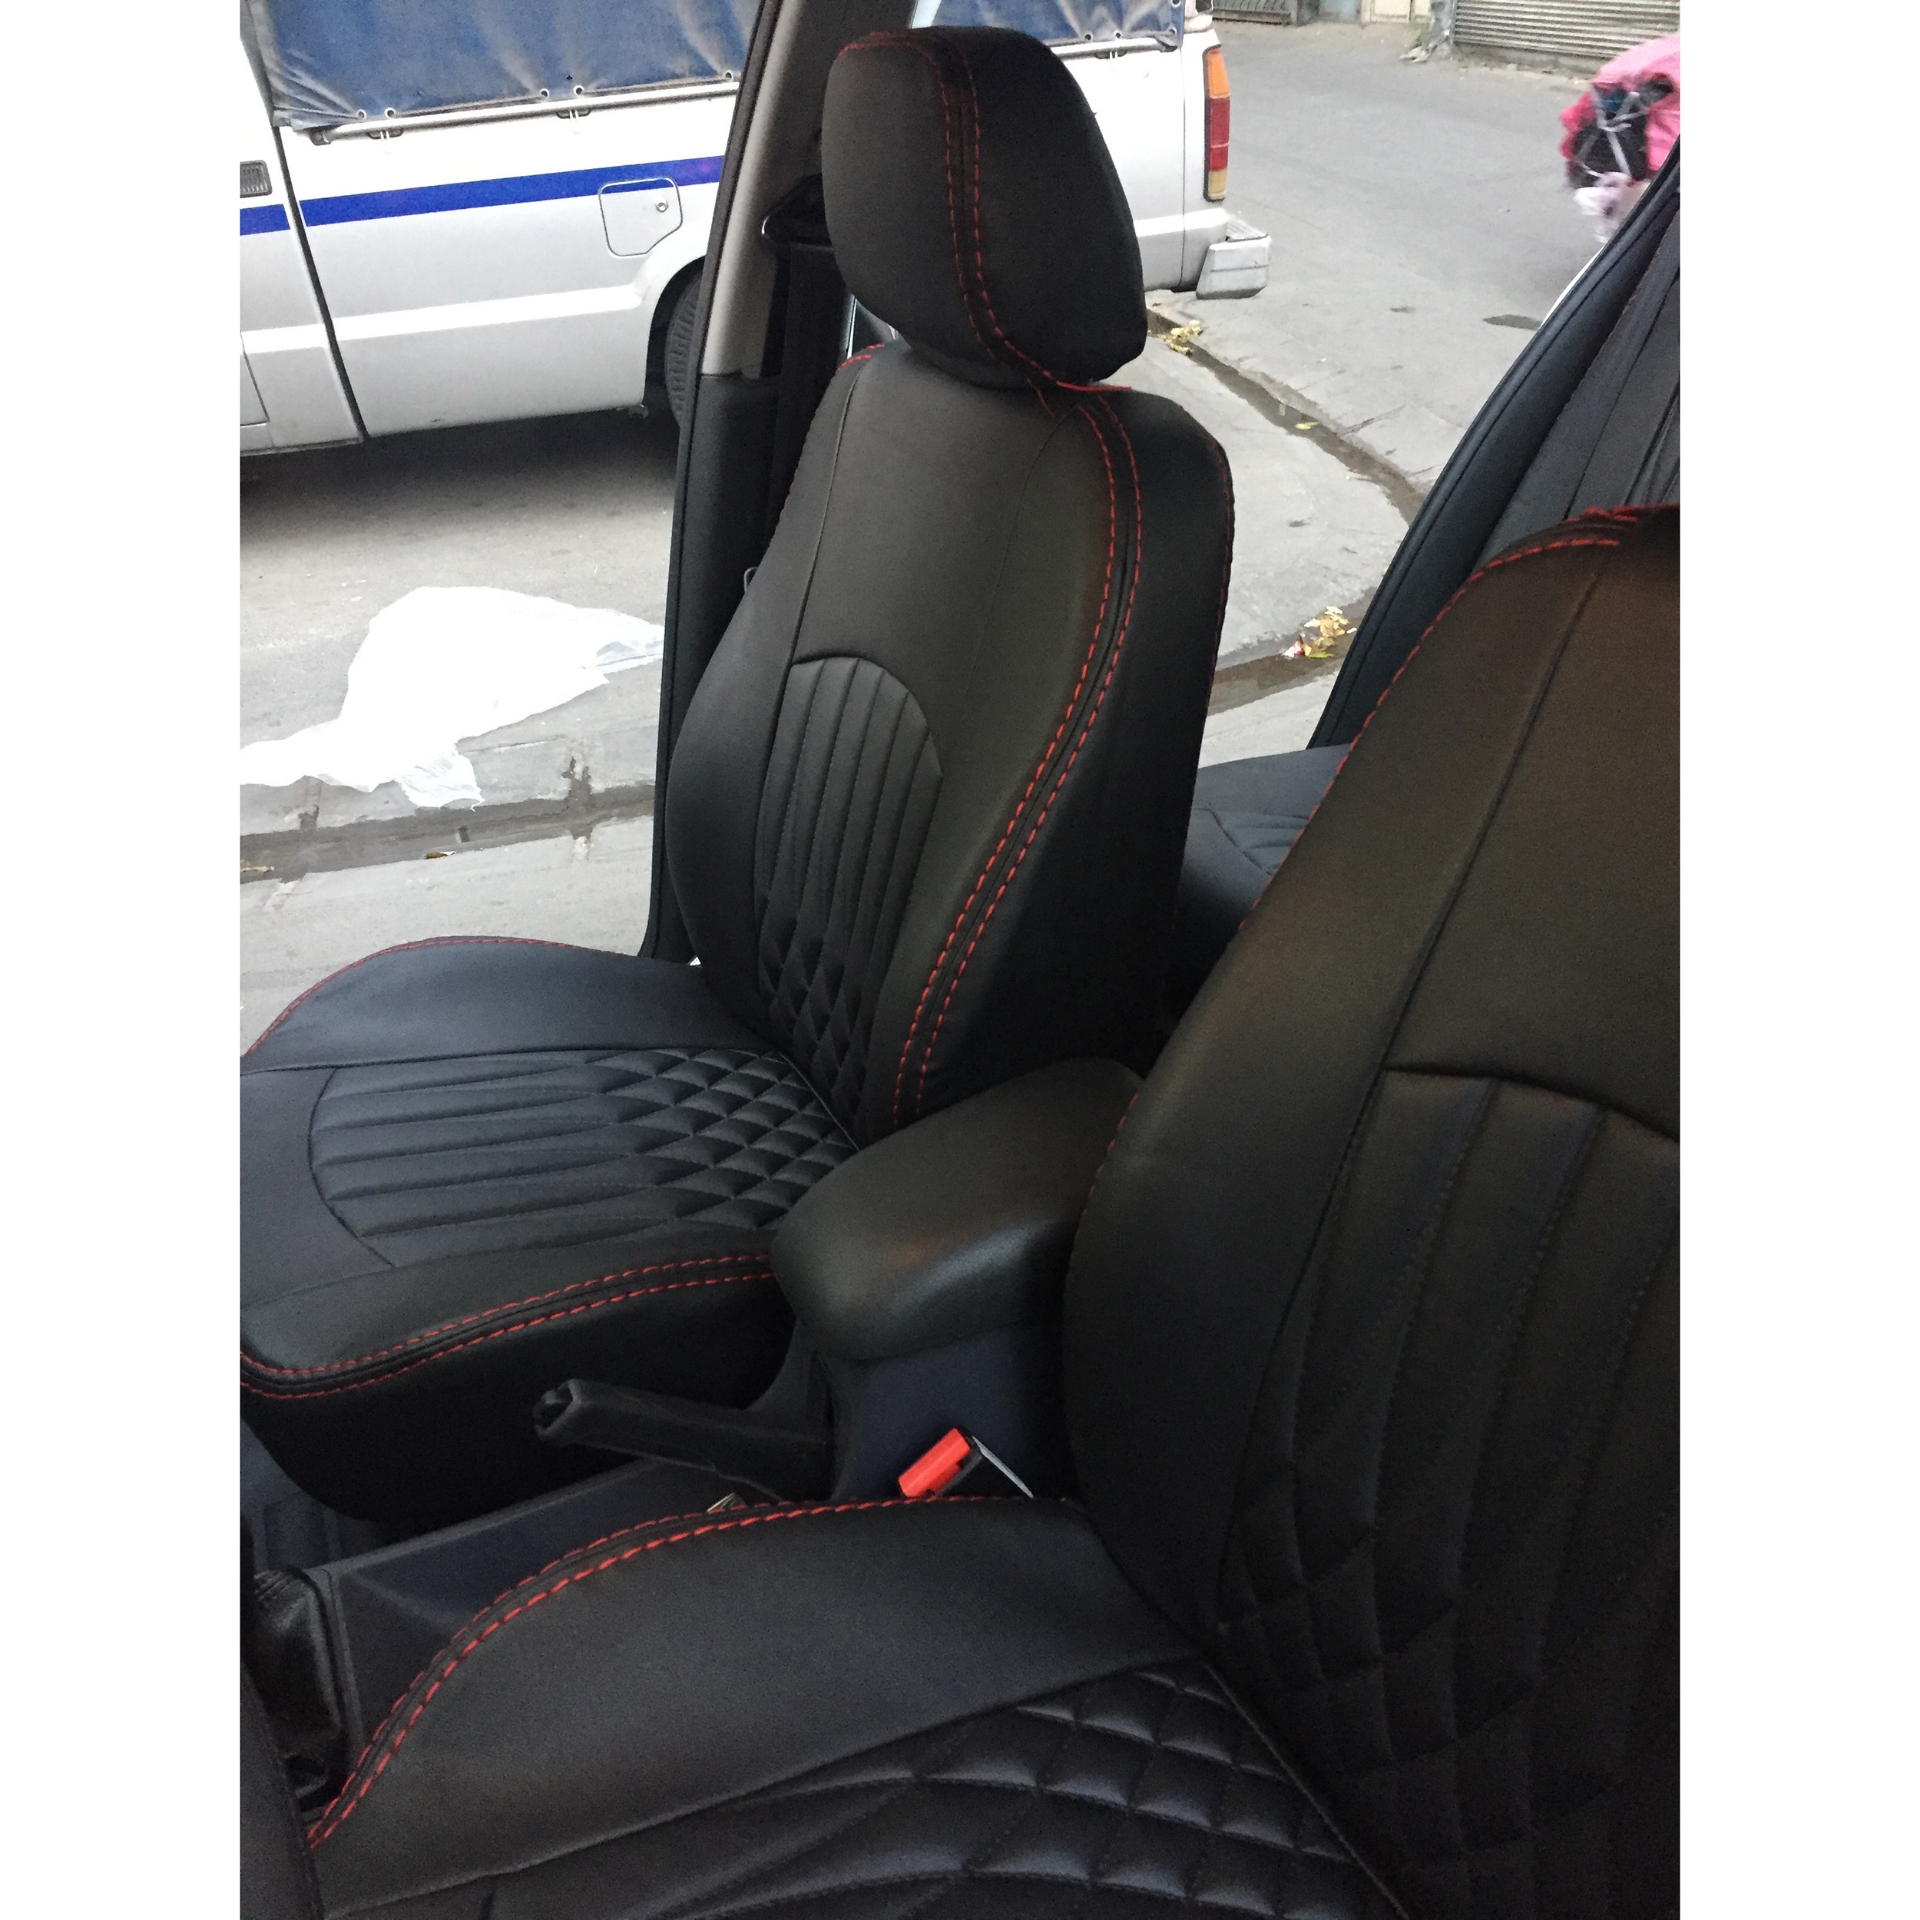 تصویر  روکش صندلی 405 صندلی جدید چرم مصنوعی طرح بوگاتی جلوه مدل ribbon